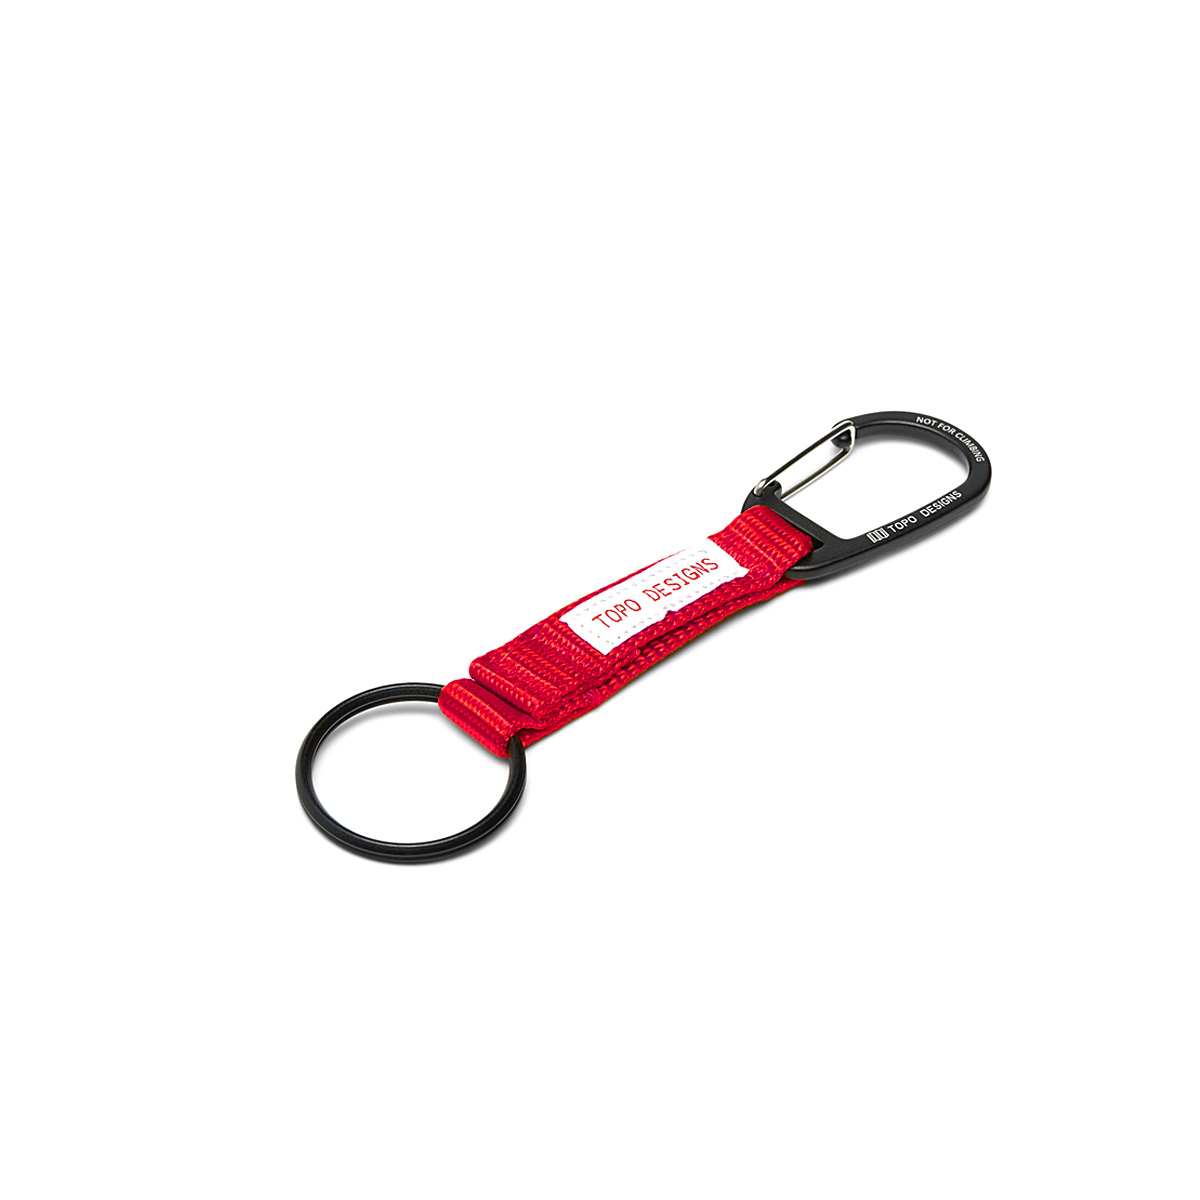 Topo Designs Key Clip Red, halten Sie Ihre Schlüssel griffbereit und sichtbar mit diesem Schlüsselclip